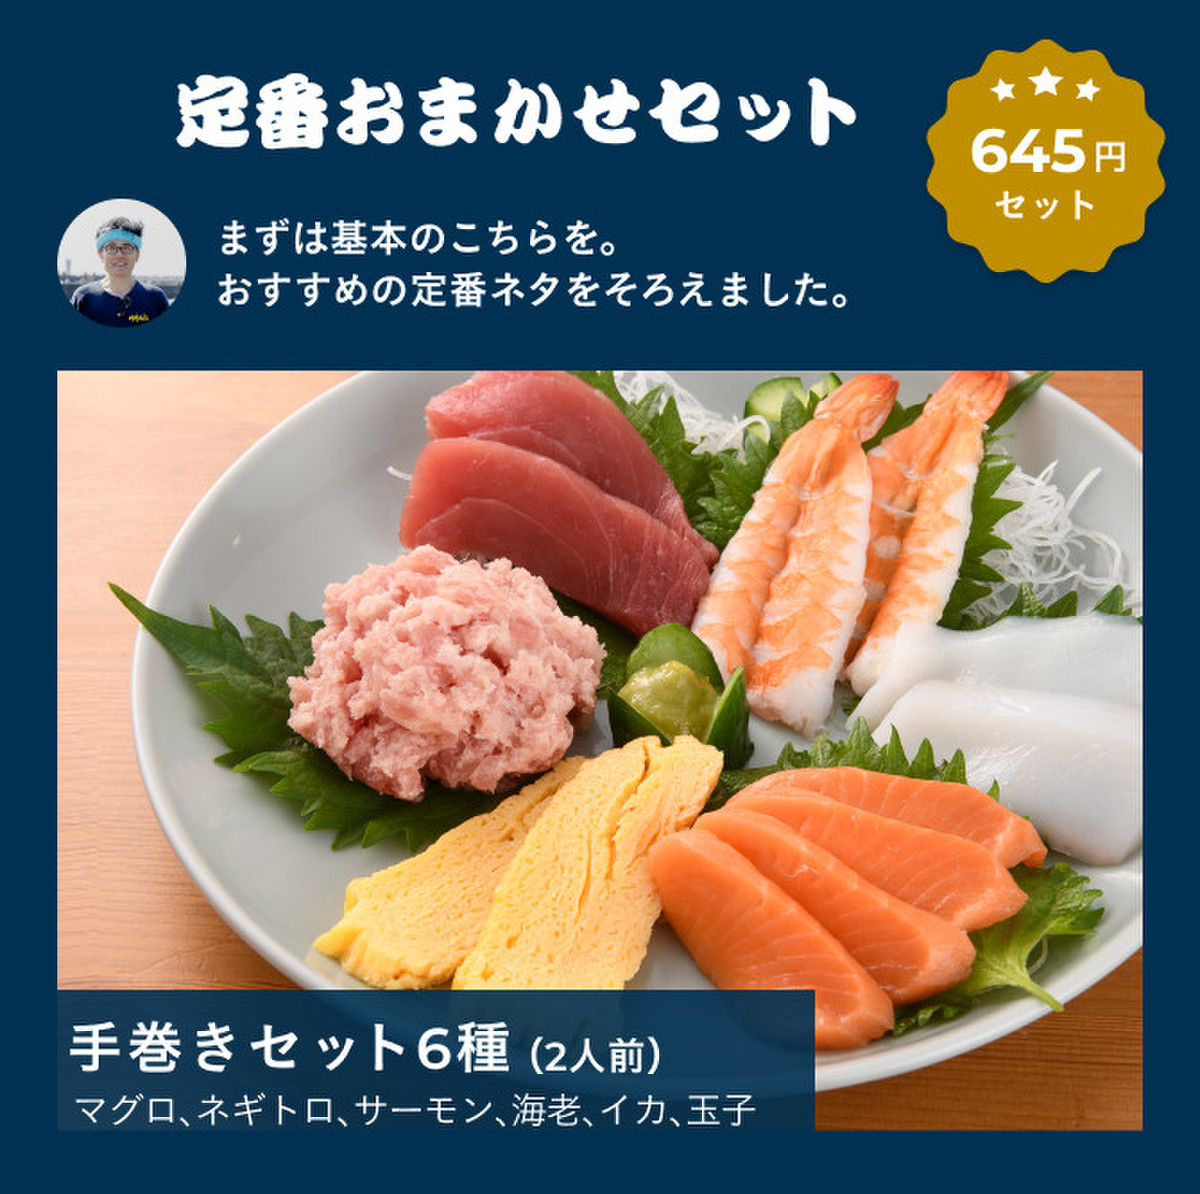 好みで選べる！手巻き寿司セット | クックパッドマート - 毎日が楽しみになる、お買いもの。